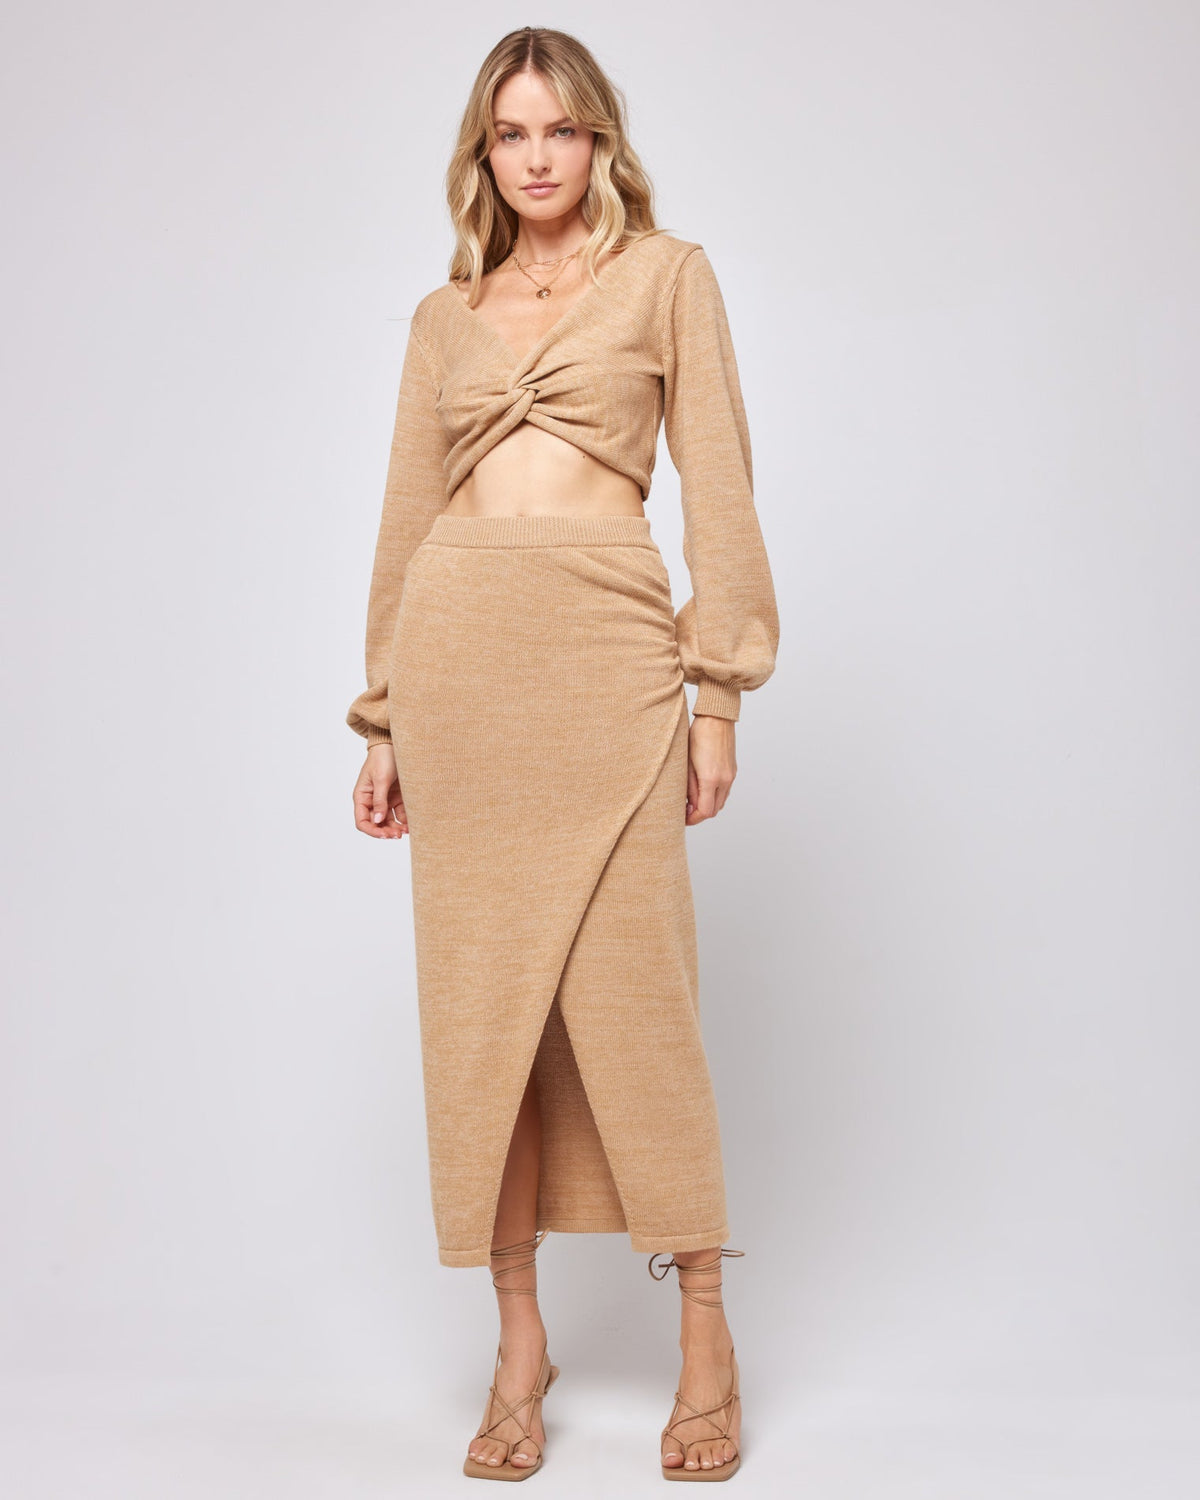 Siren Skirt - Camel Camel | Model: Lura (size: S)